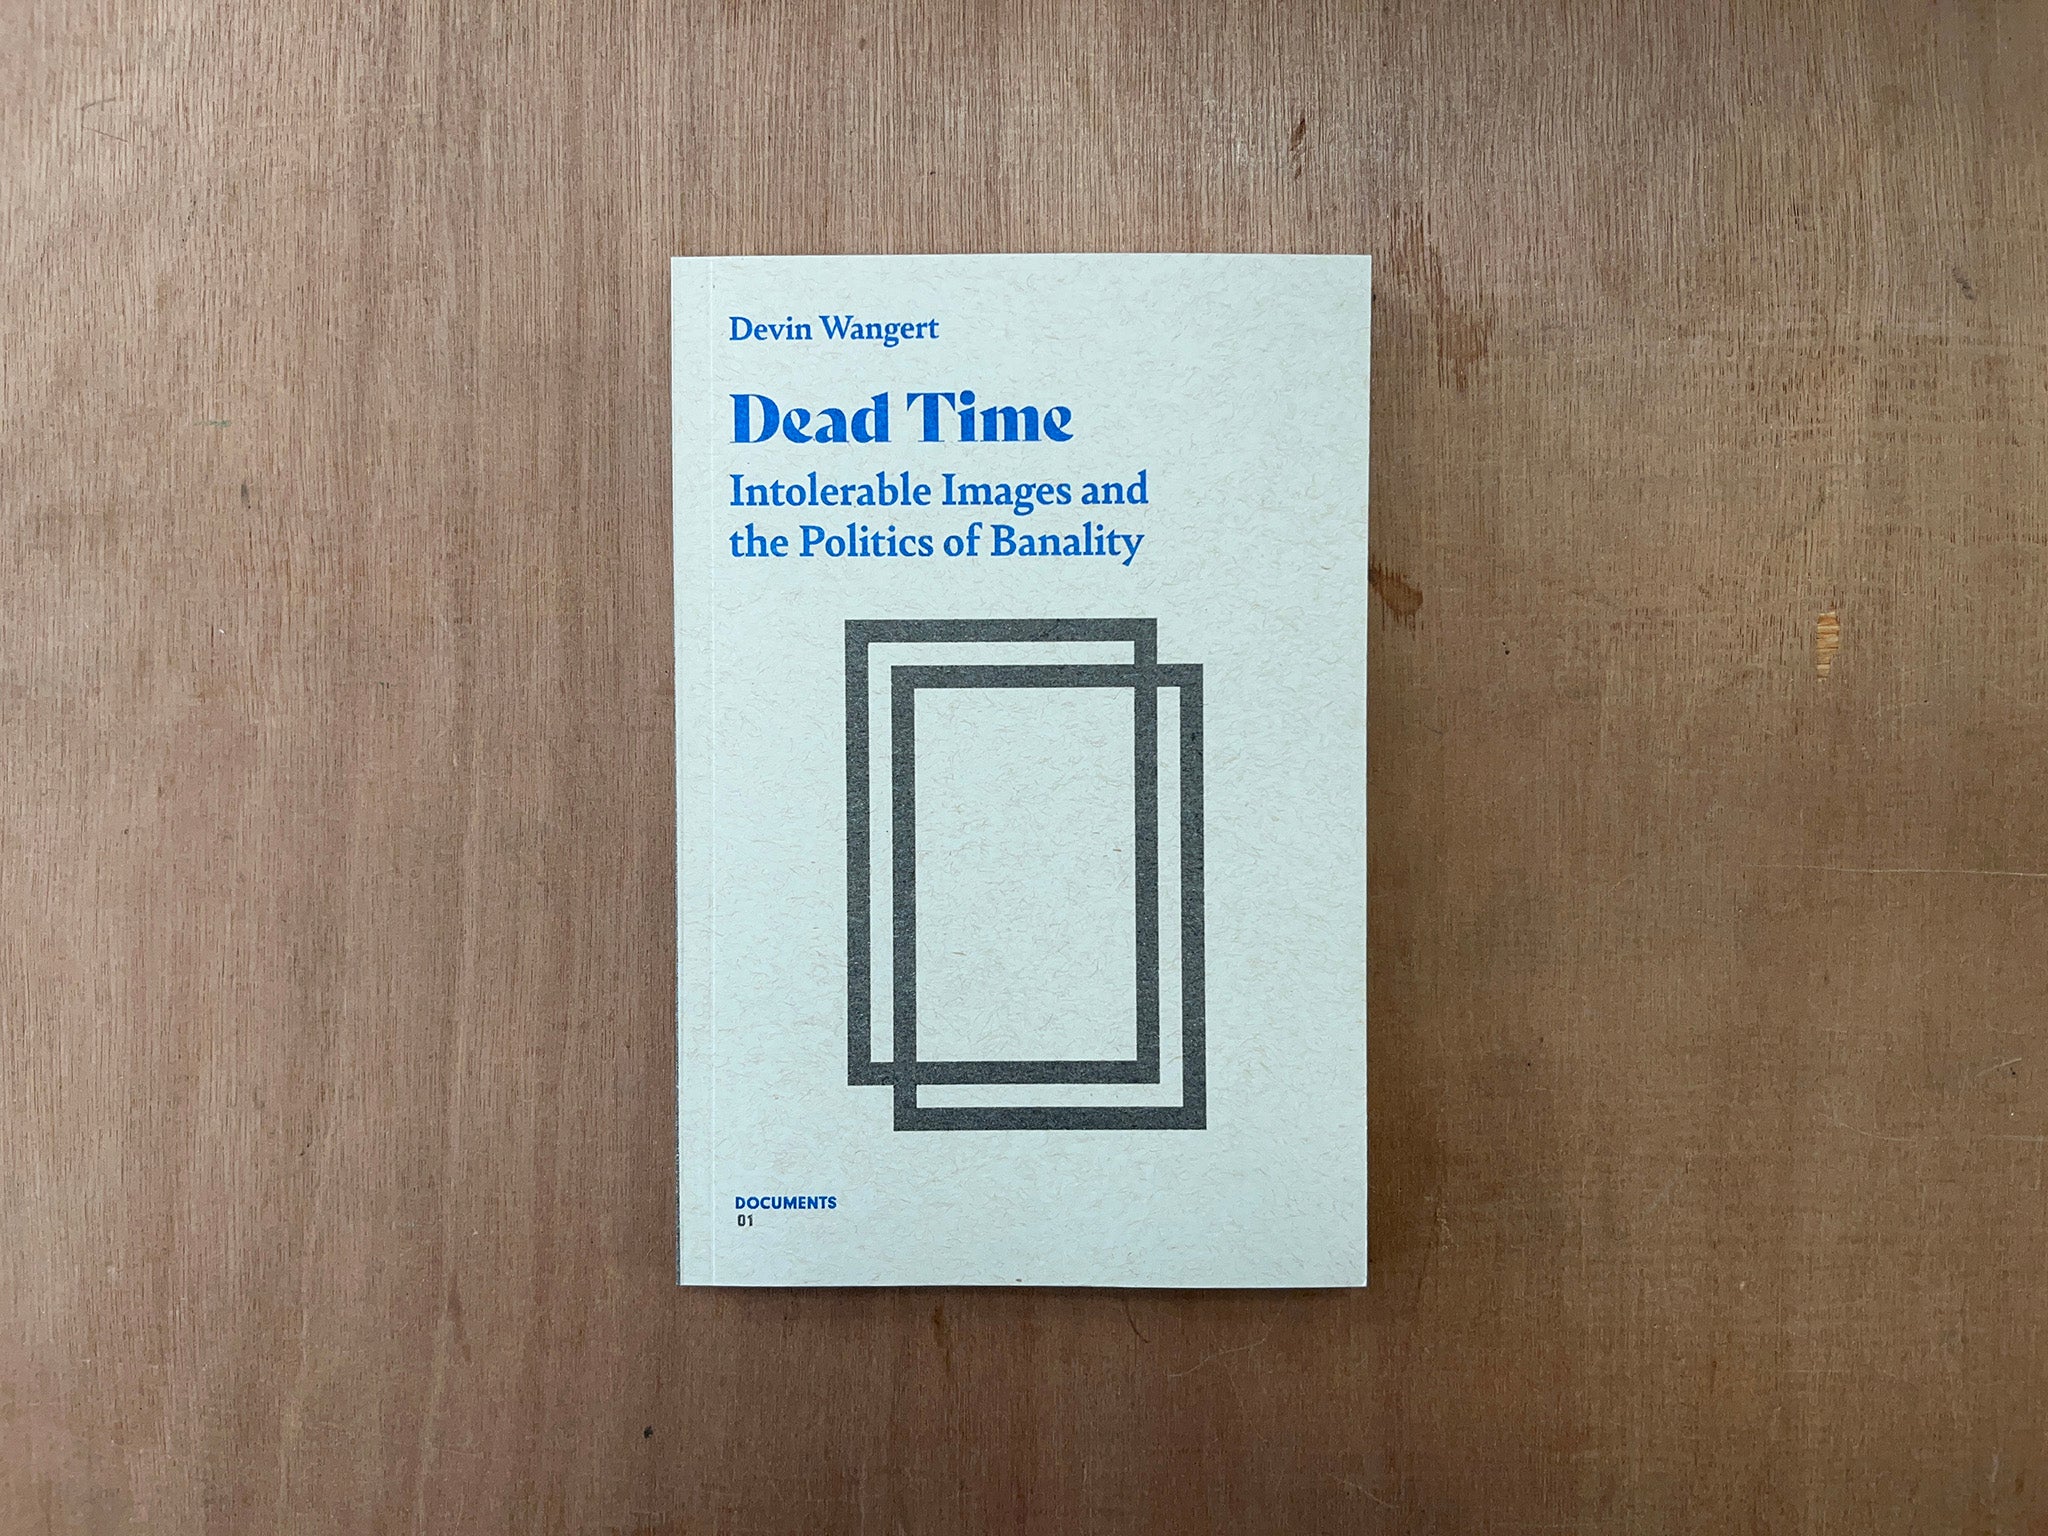 DEAD TIME BY Devin Wangert